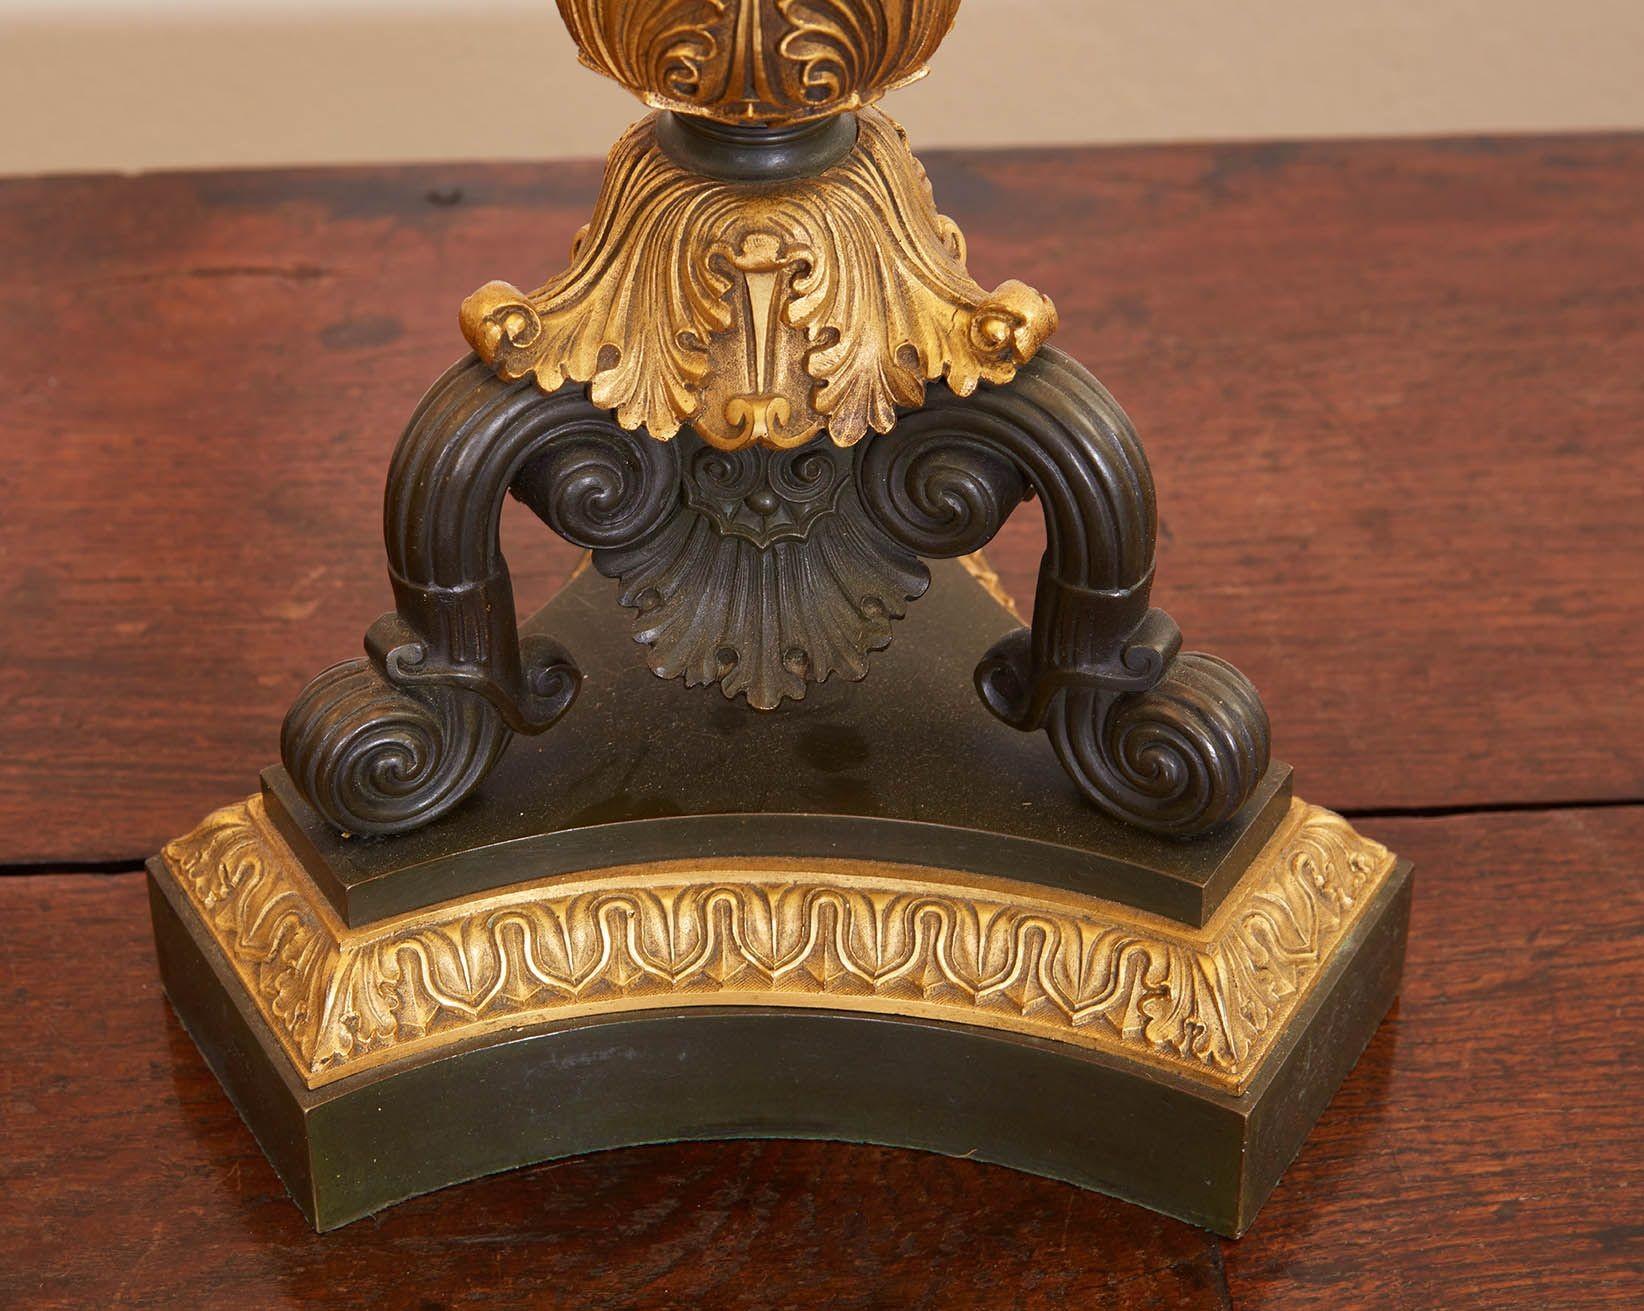 Ein Paar neoklassizistische Tischlampen aus Bronze. Jede Lampe hat eine zentrale Säule aus patinierter Bronze mit Kapitell und Sockel aus vergoldeter Bronze, die auf einem konkaven Sockel mit drei gewölbten und geschwungenen Bronzebeinen stehen, die